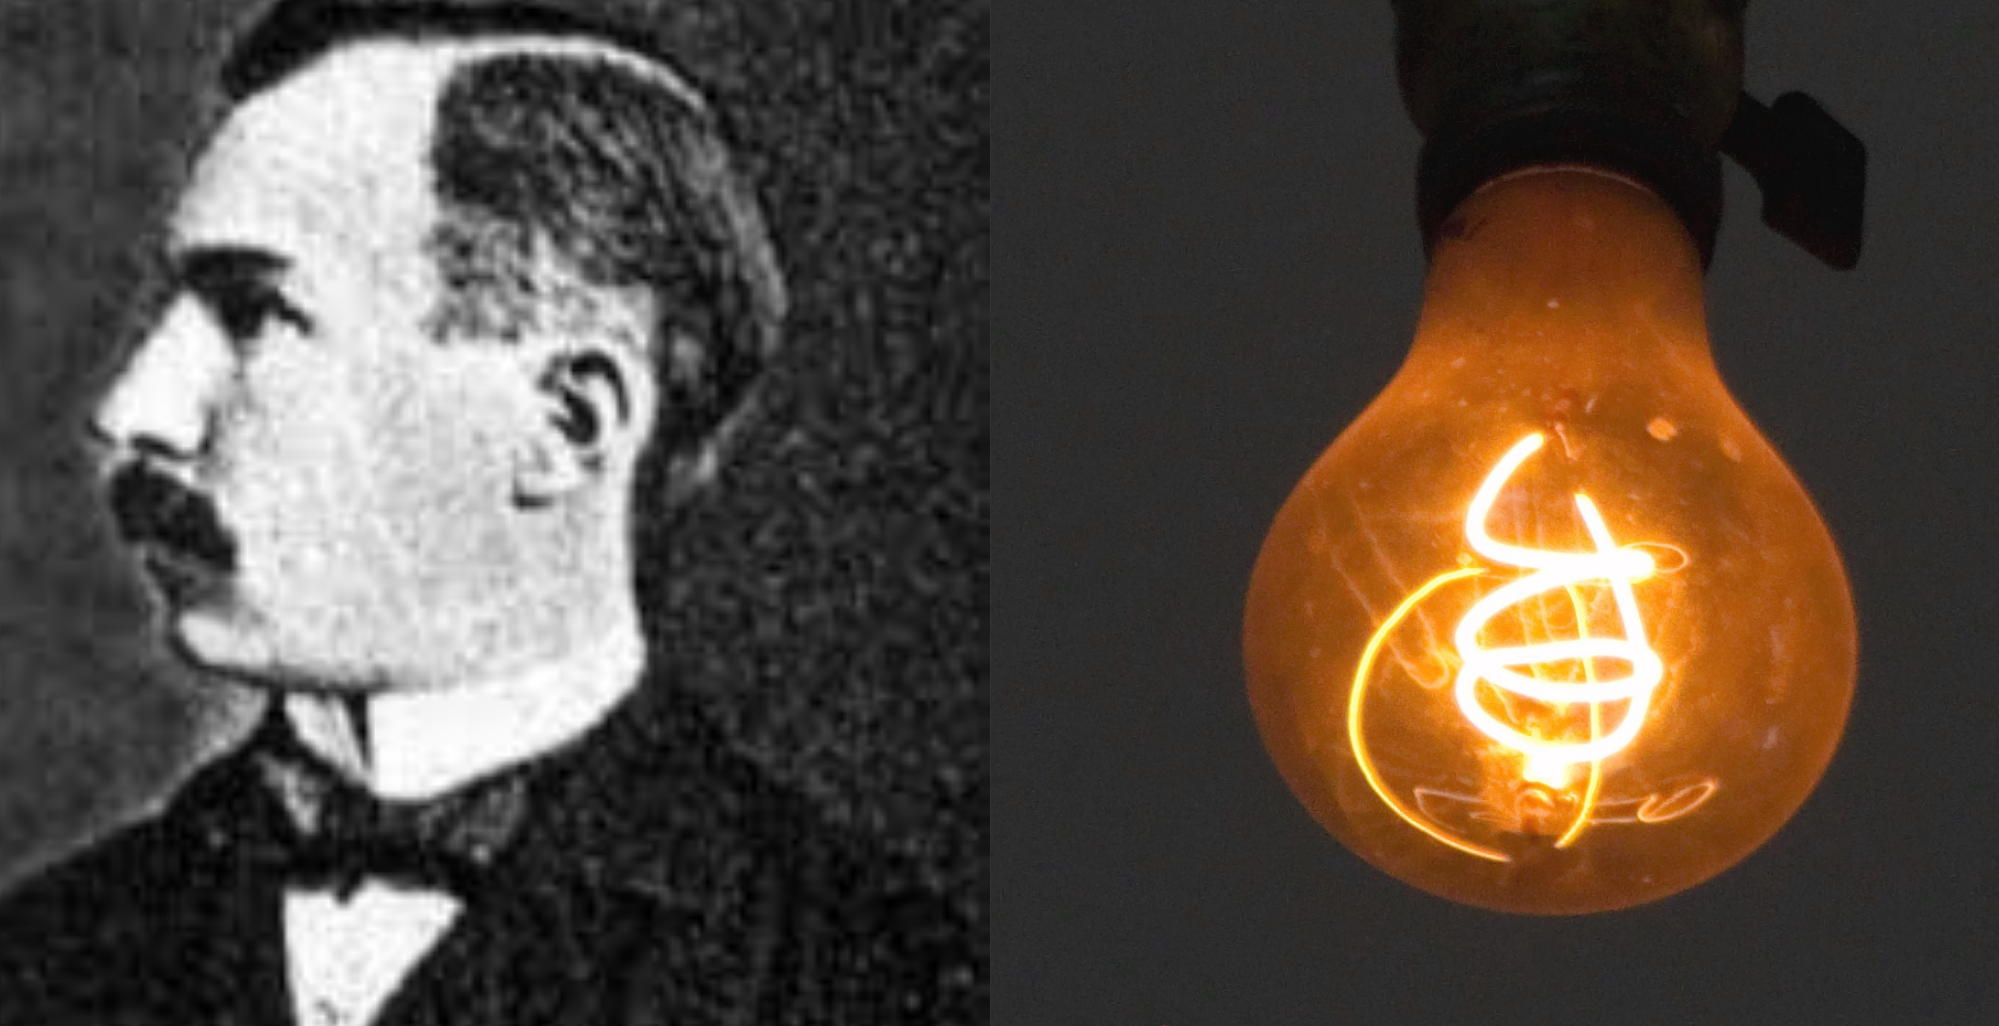 Centennial Light là bóng đèn dây tóc do kỹ sư người Pháp Adolphe Chaillet thiết kế